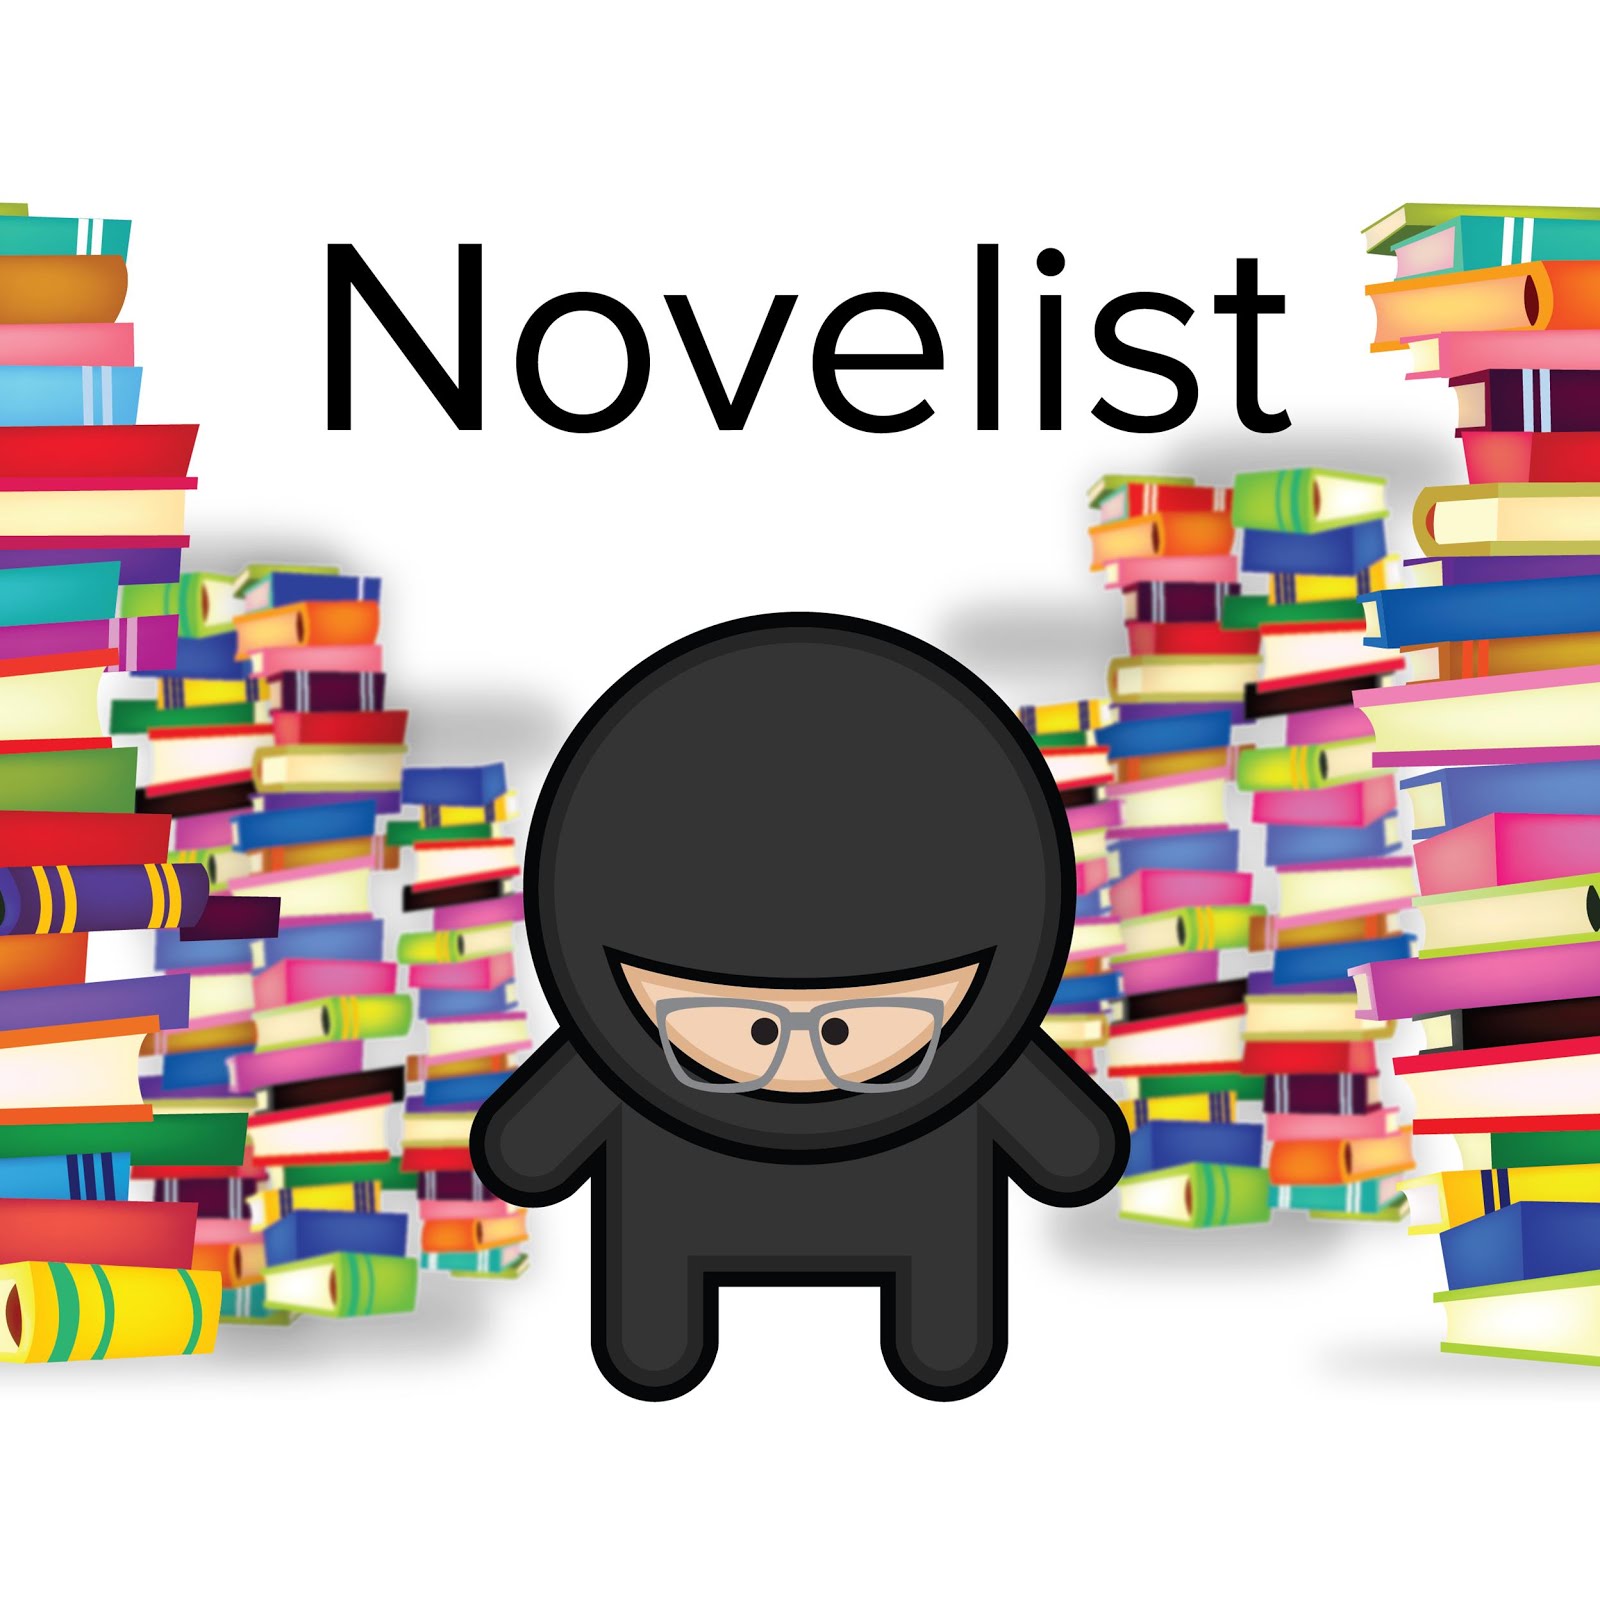 Novelist